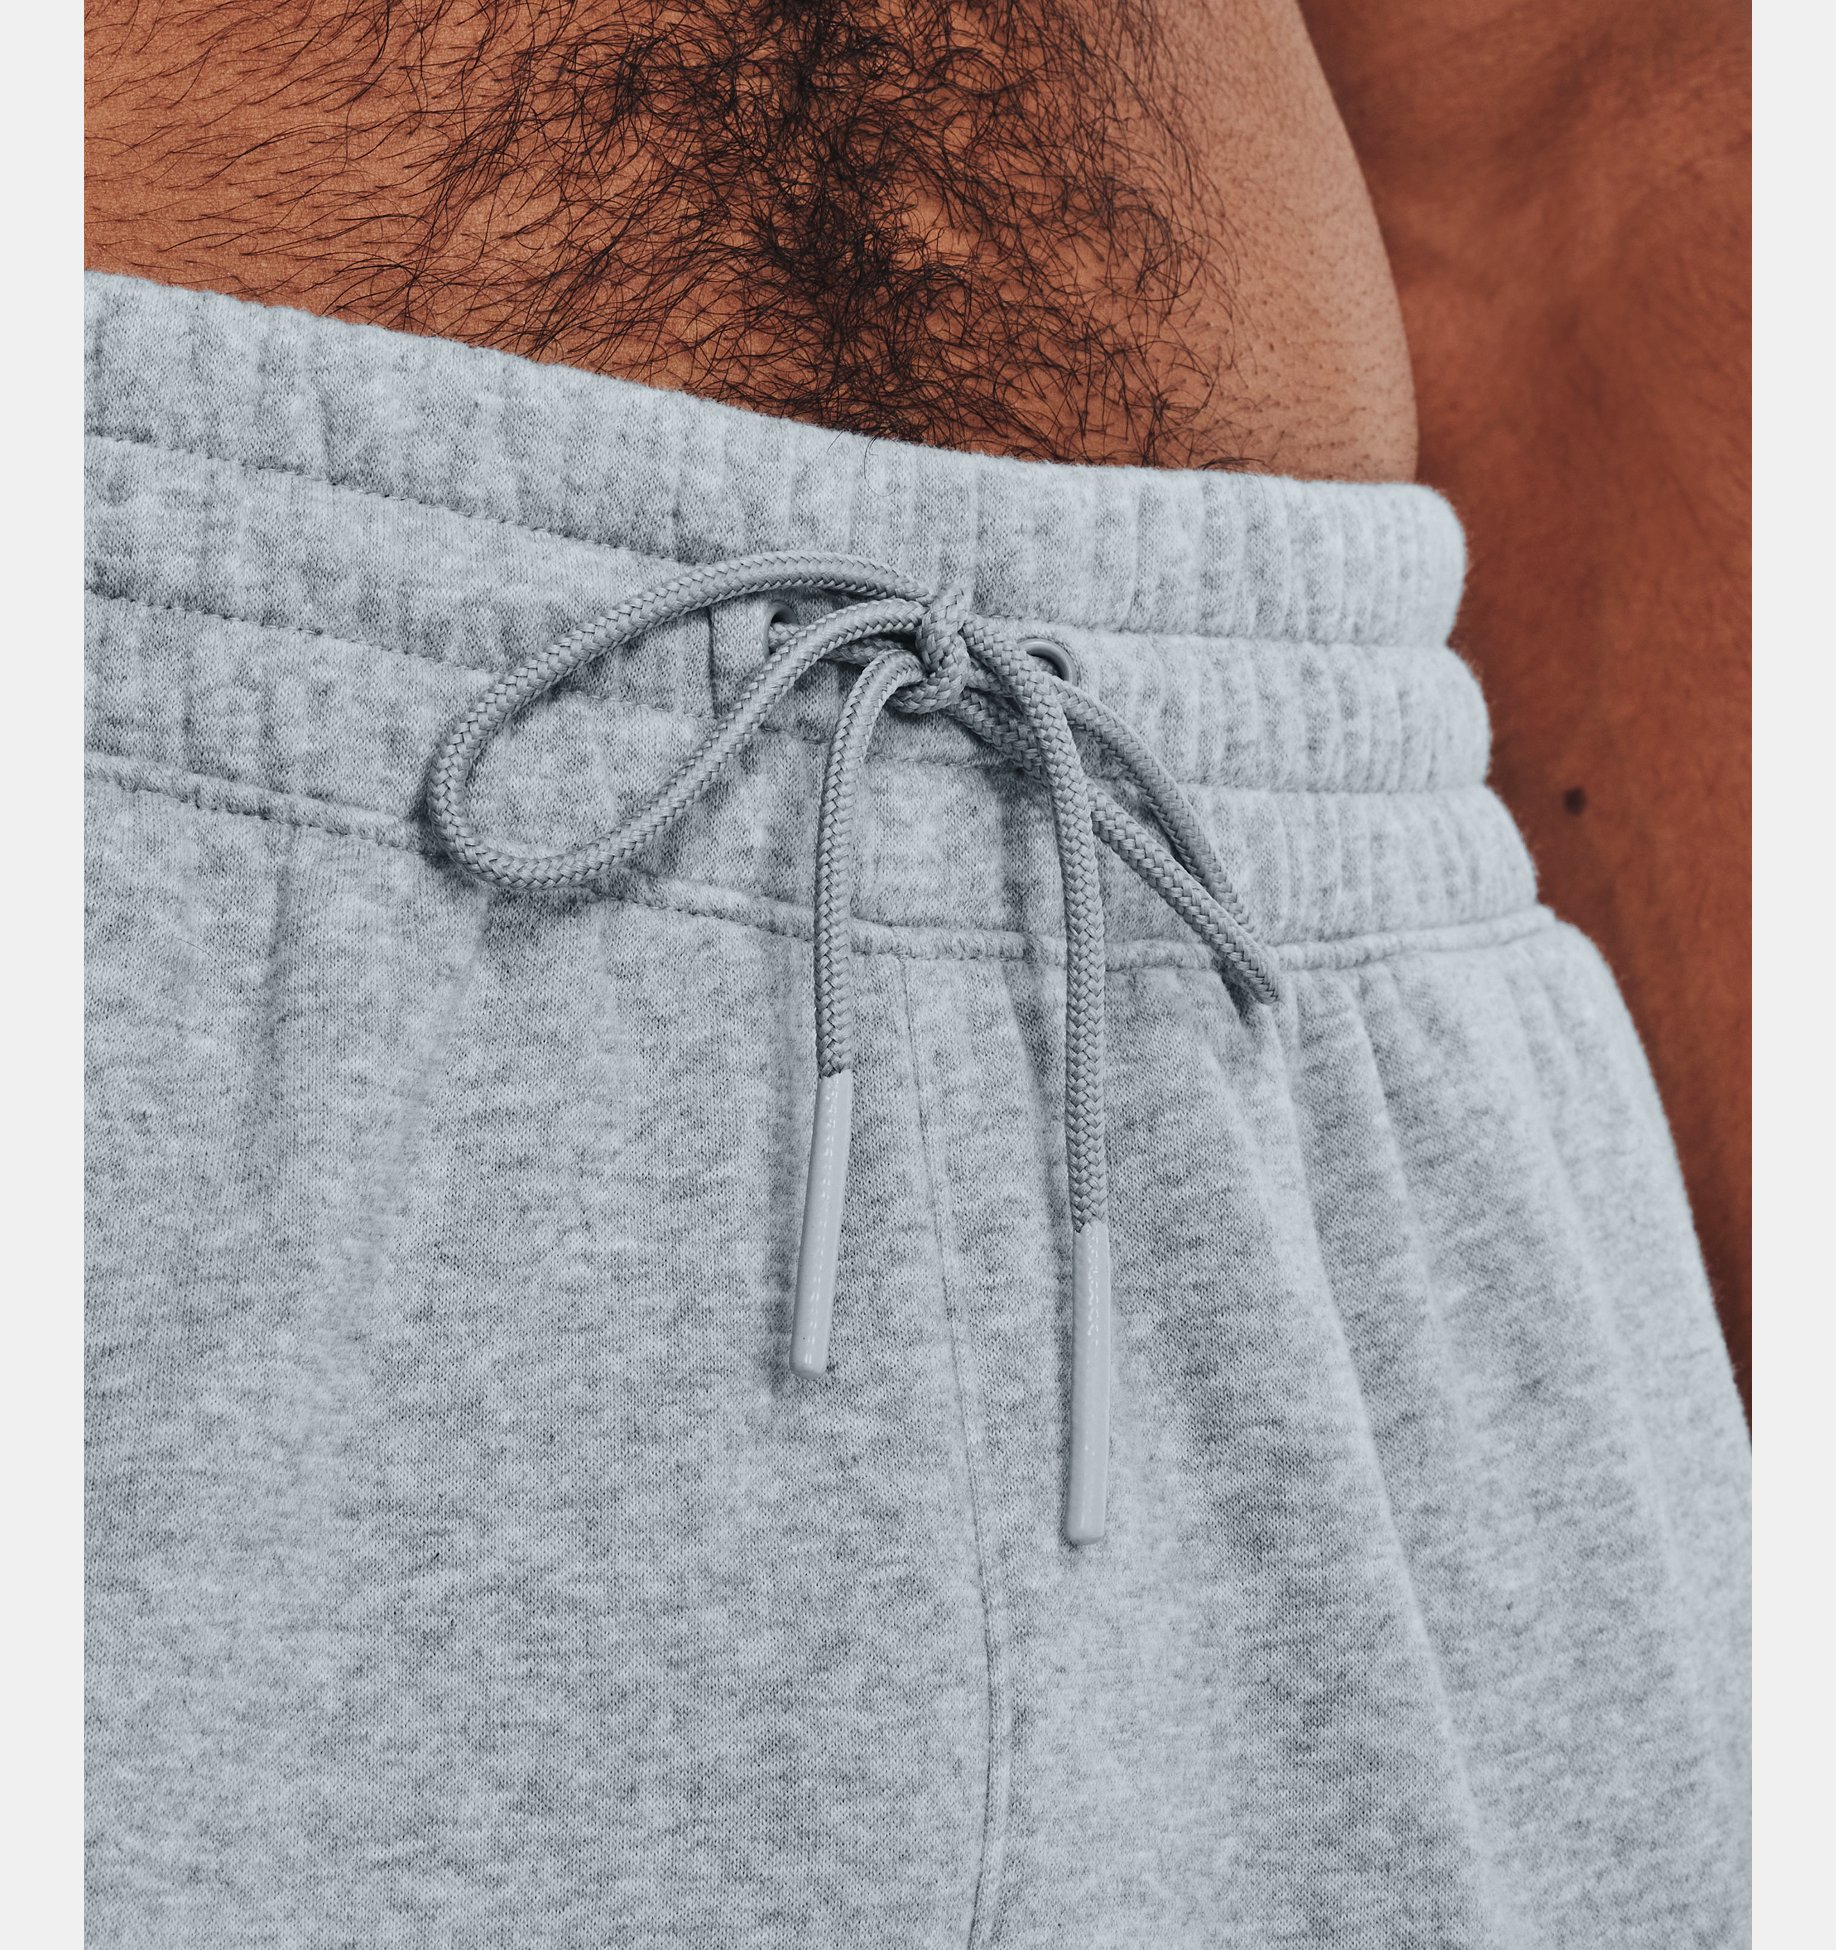 Men's Curry Fleece Sweatpants